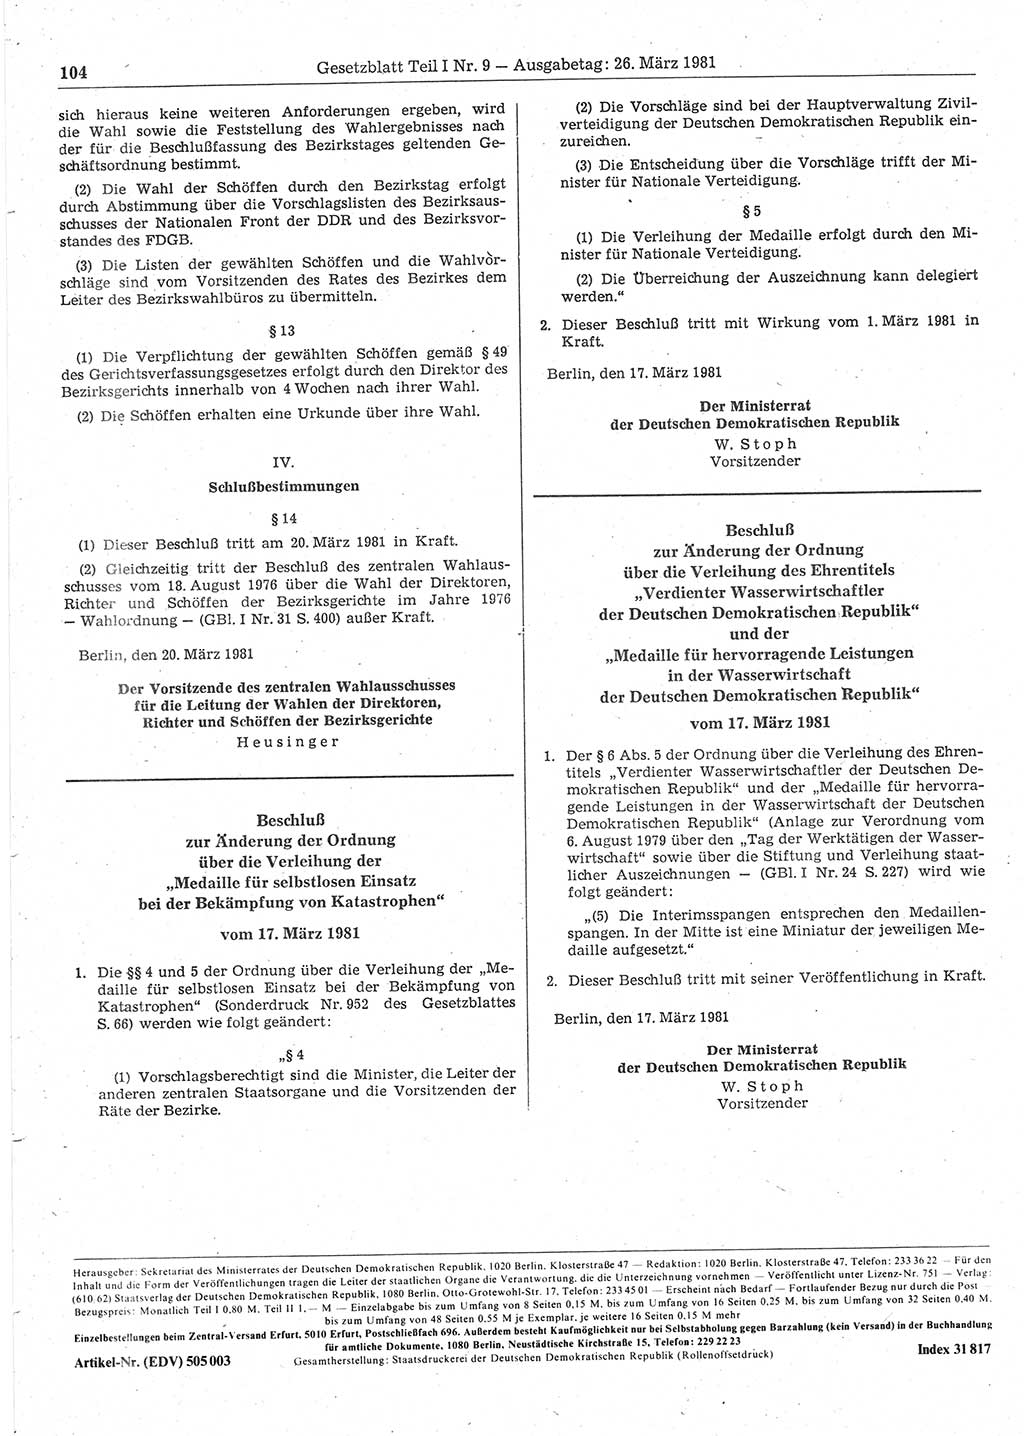 Gesetzblatt (GBl.) der Deutschen Demokratischen Republik (DDR) Teil Ⅰ 1981, Seite 104 (GBl. DDR Ⅰ 1981, S. 104)